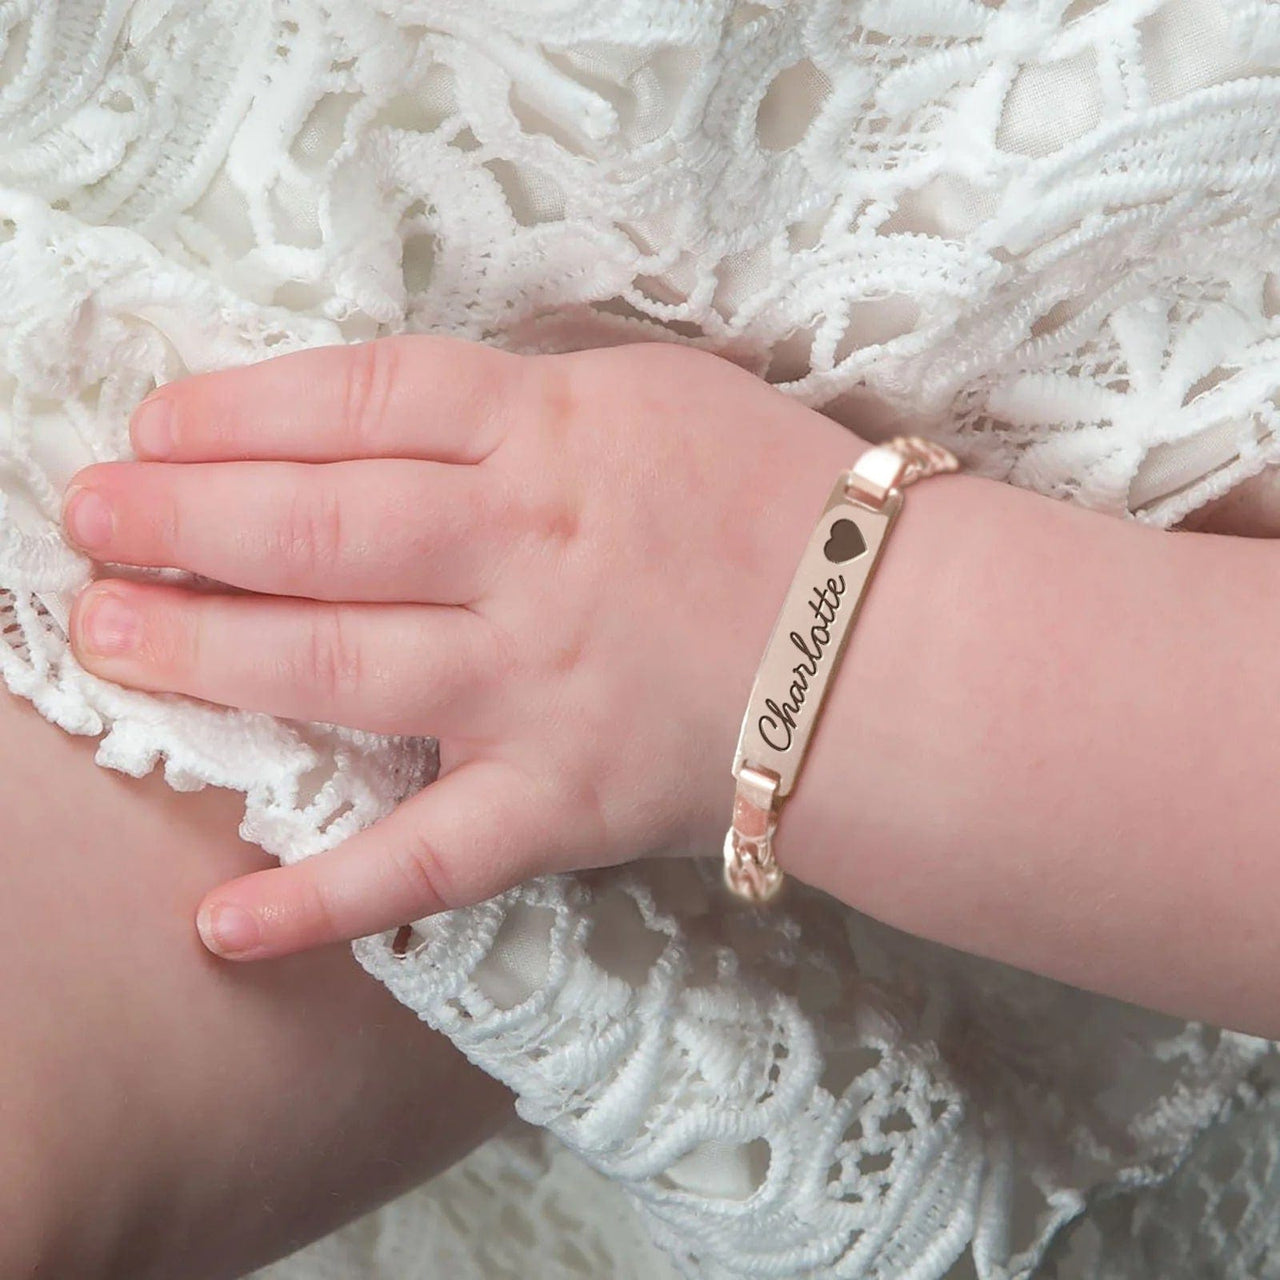 Baby Name Bracelet